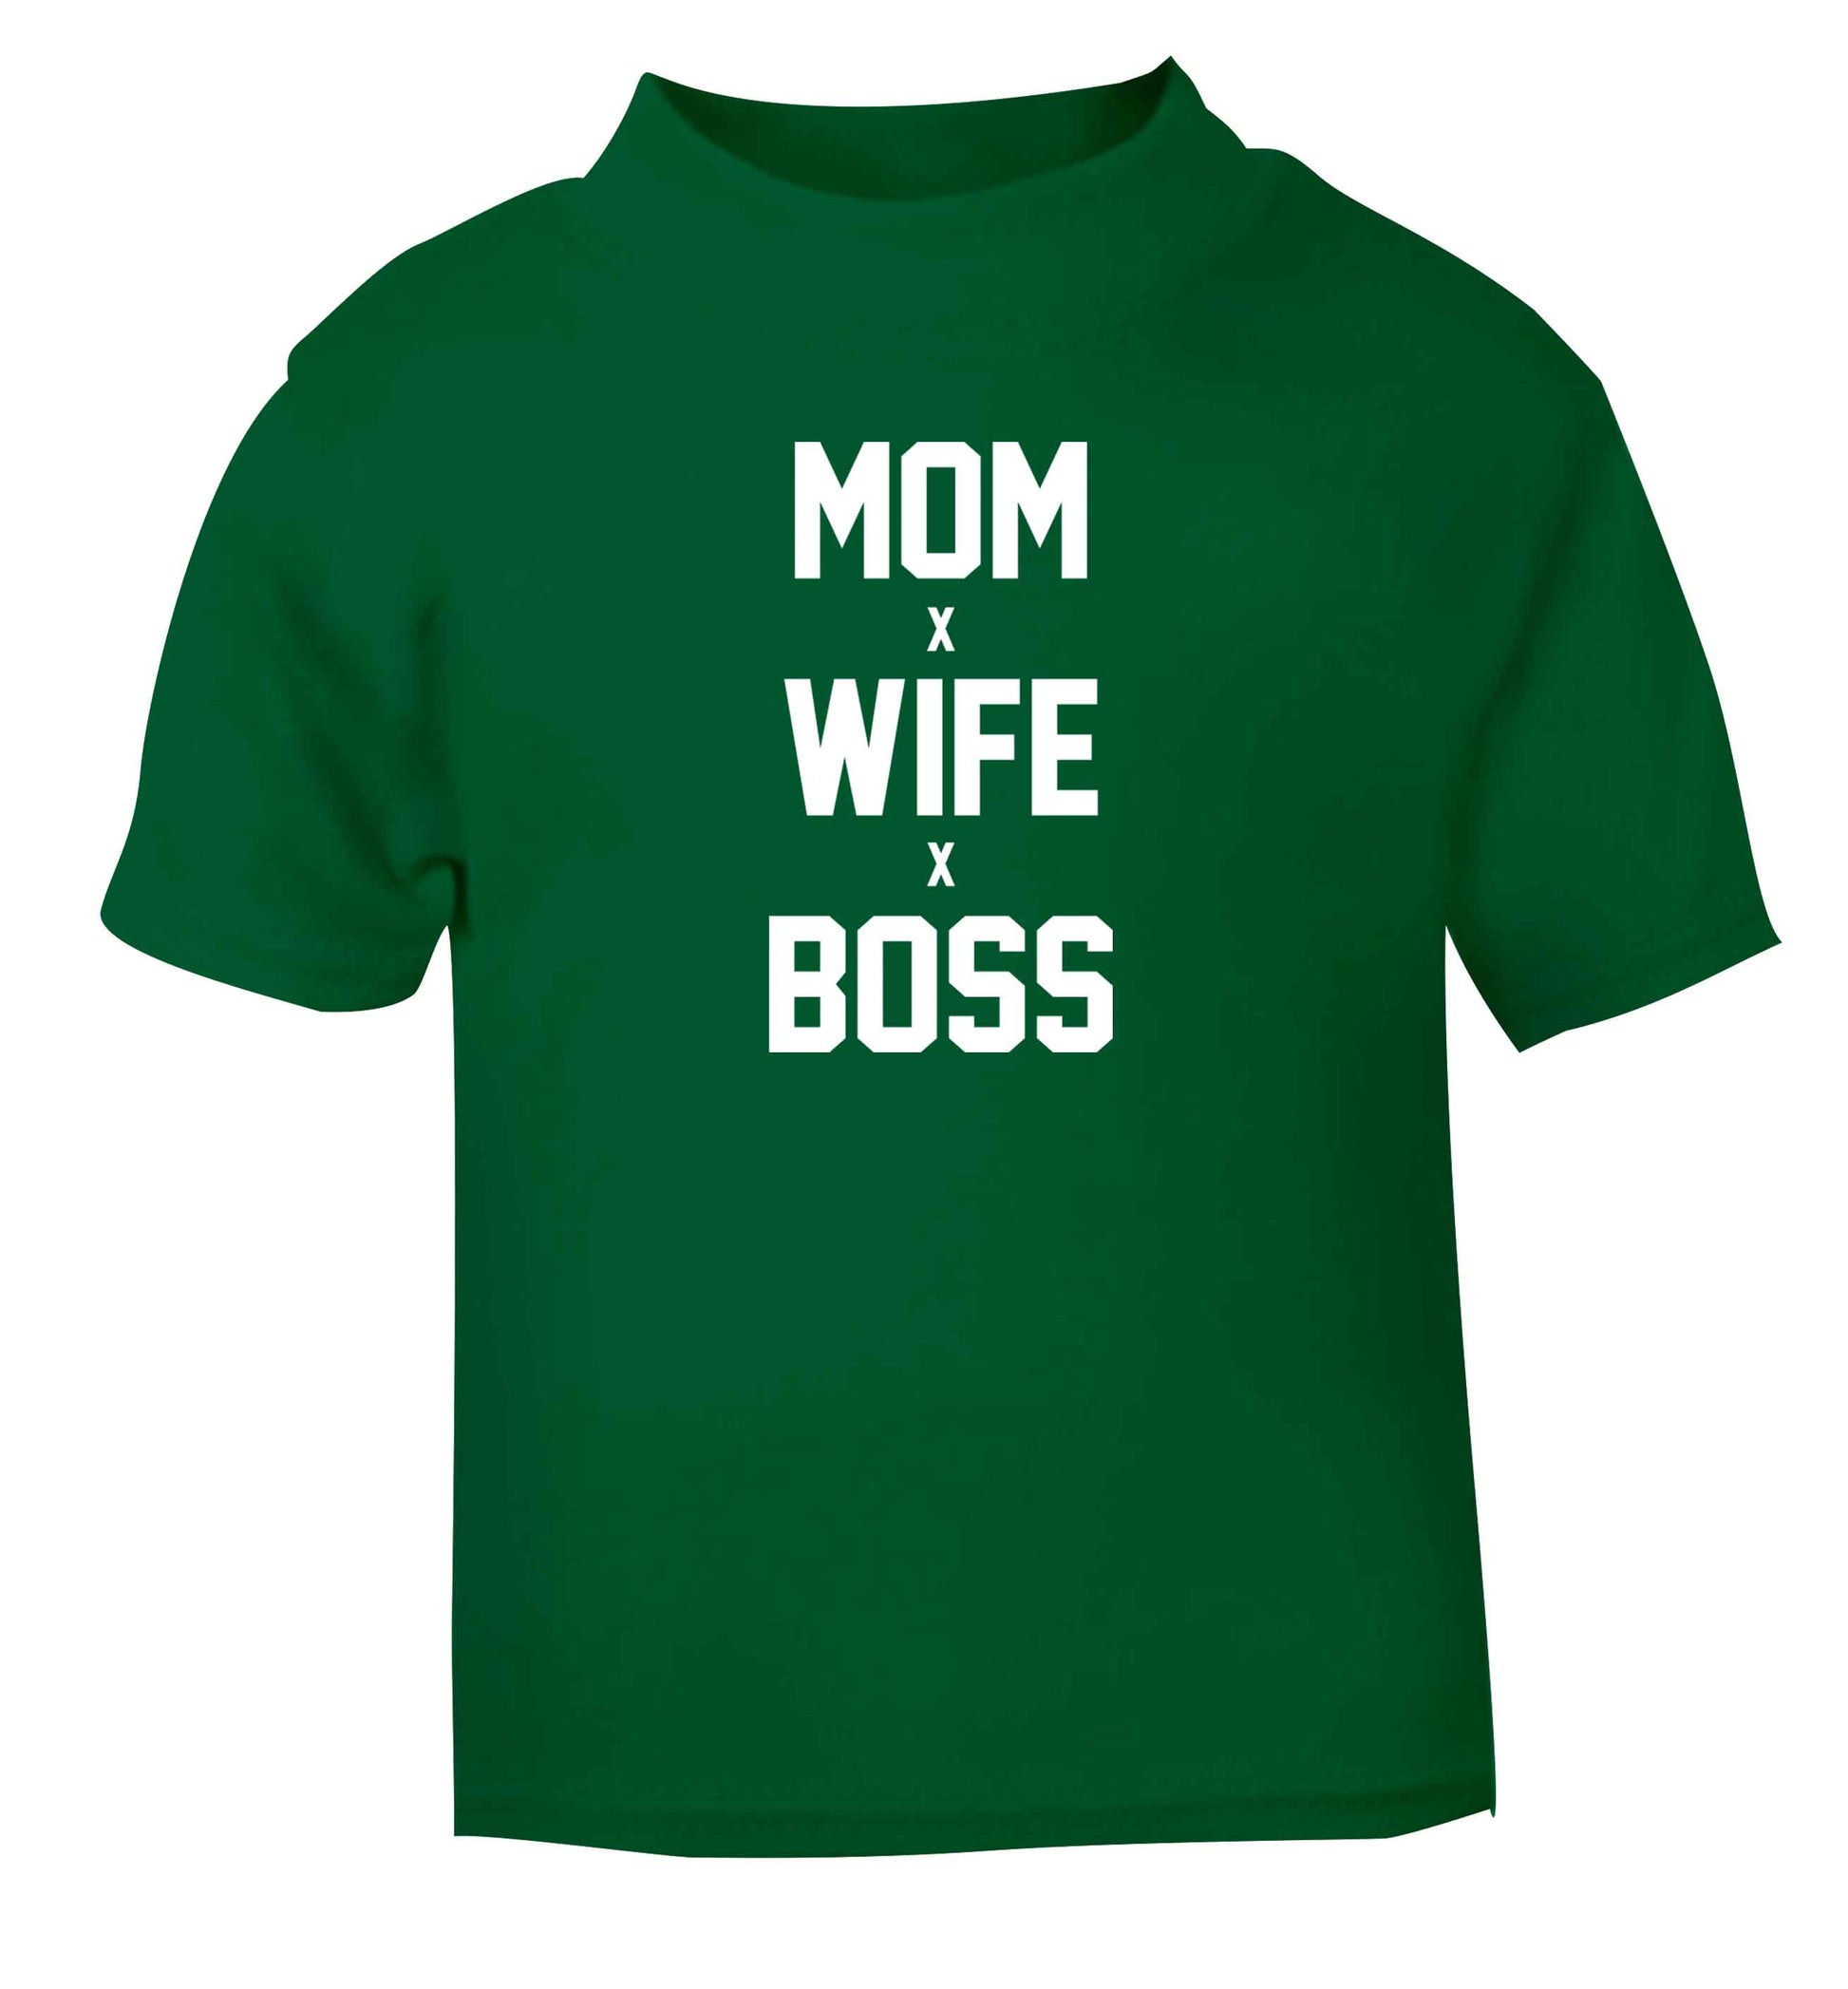 Mum wife boss green baby toddler Tshirt 2 Years